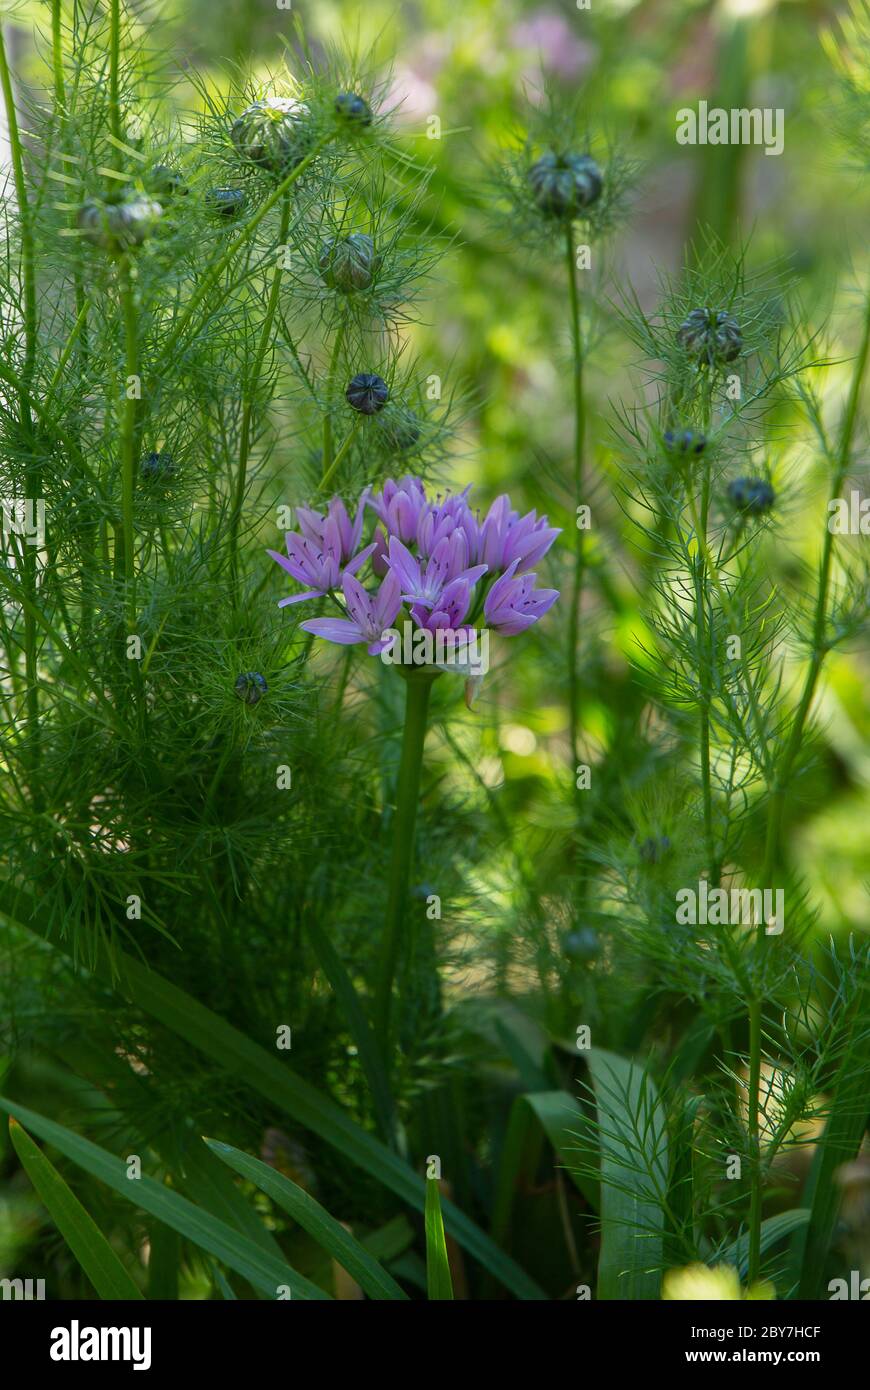 Allium Unifolium in bloom Stock Photo